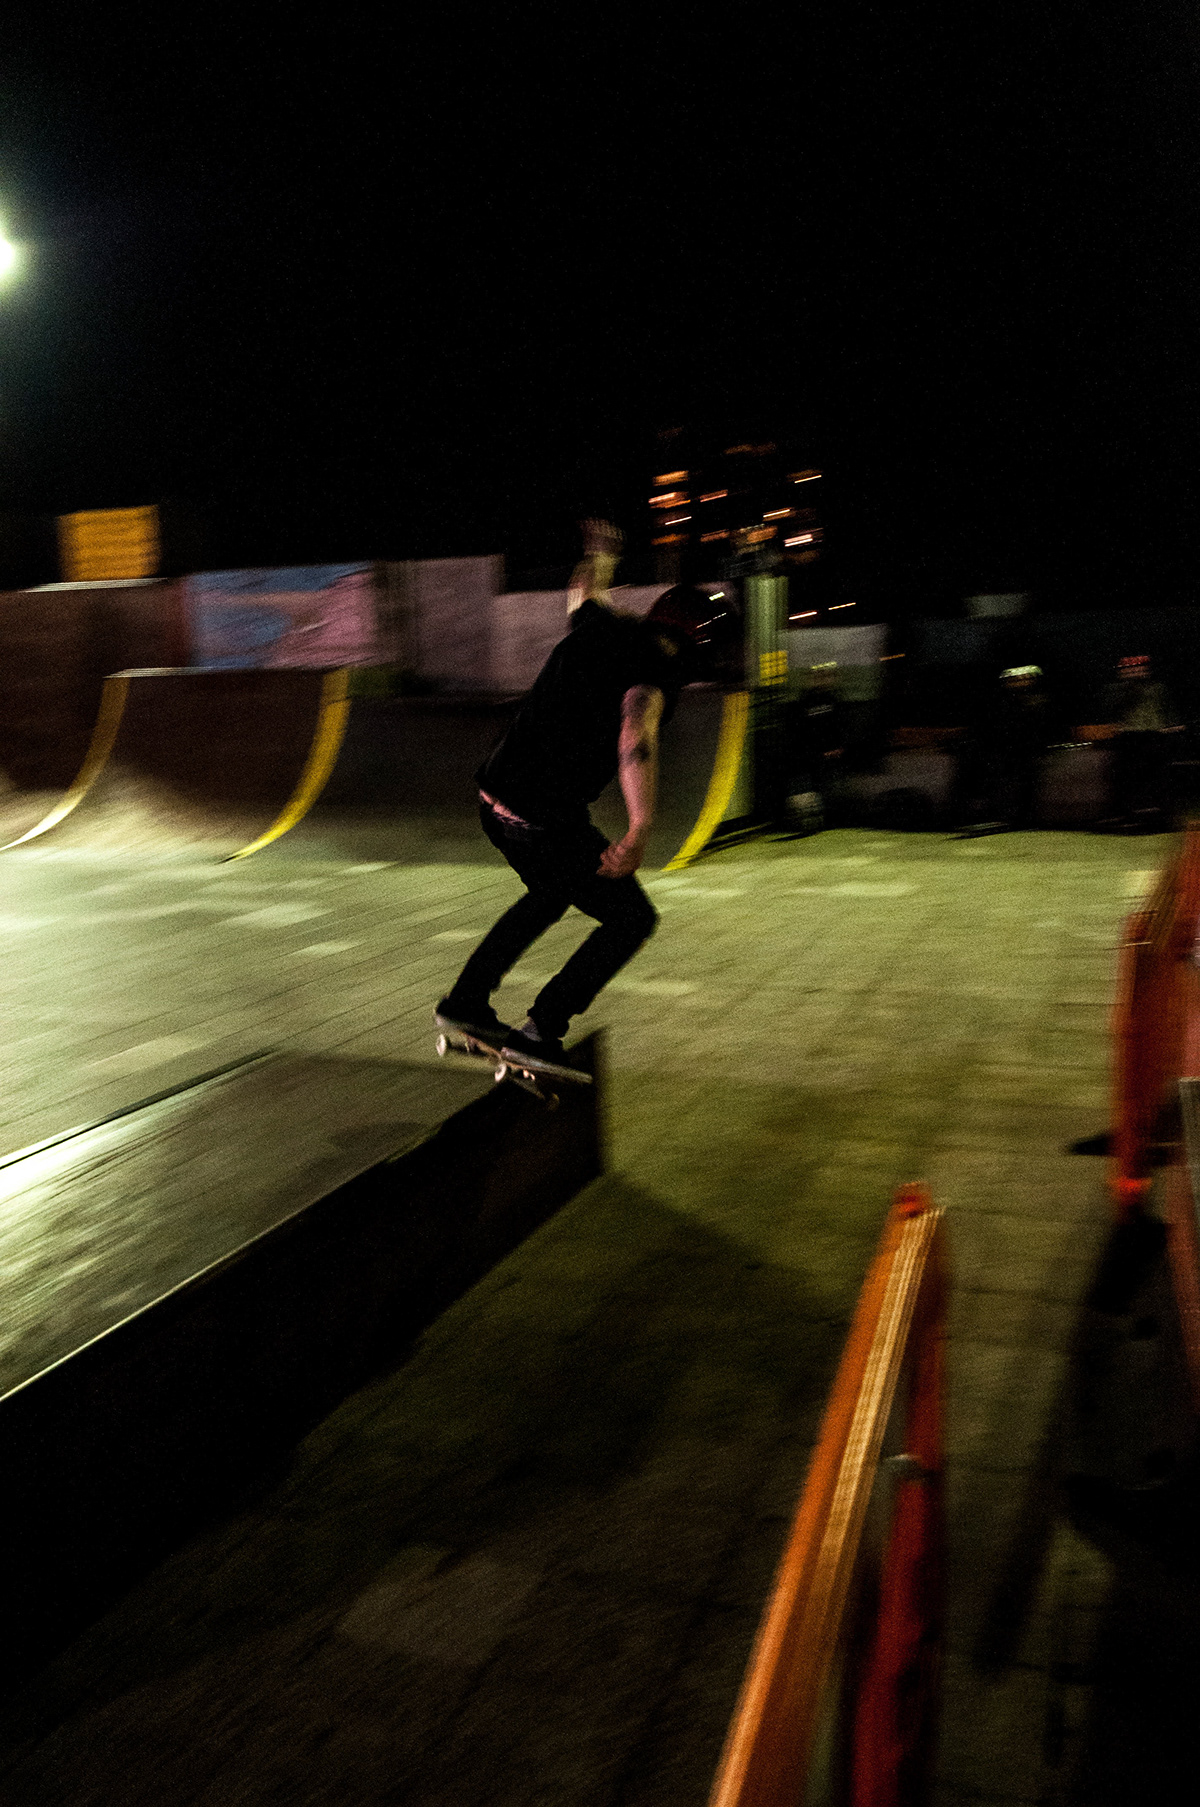 Skating skateboarding skater southsea portsmouth blur